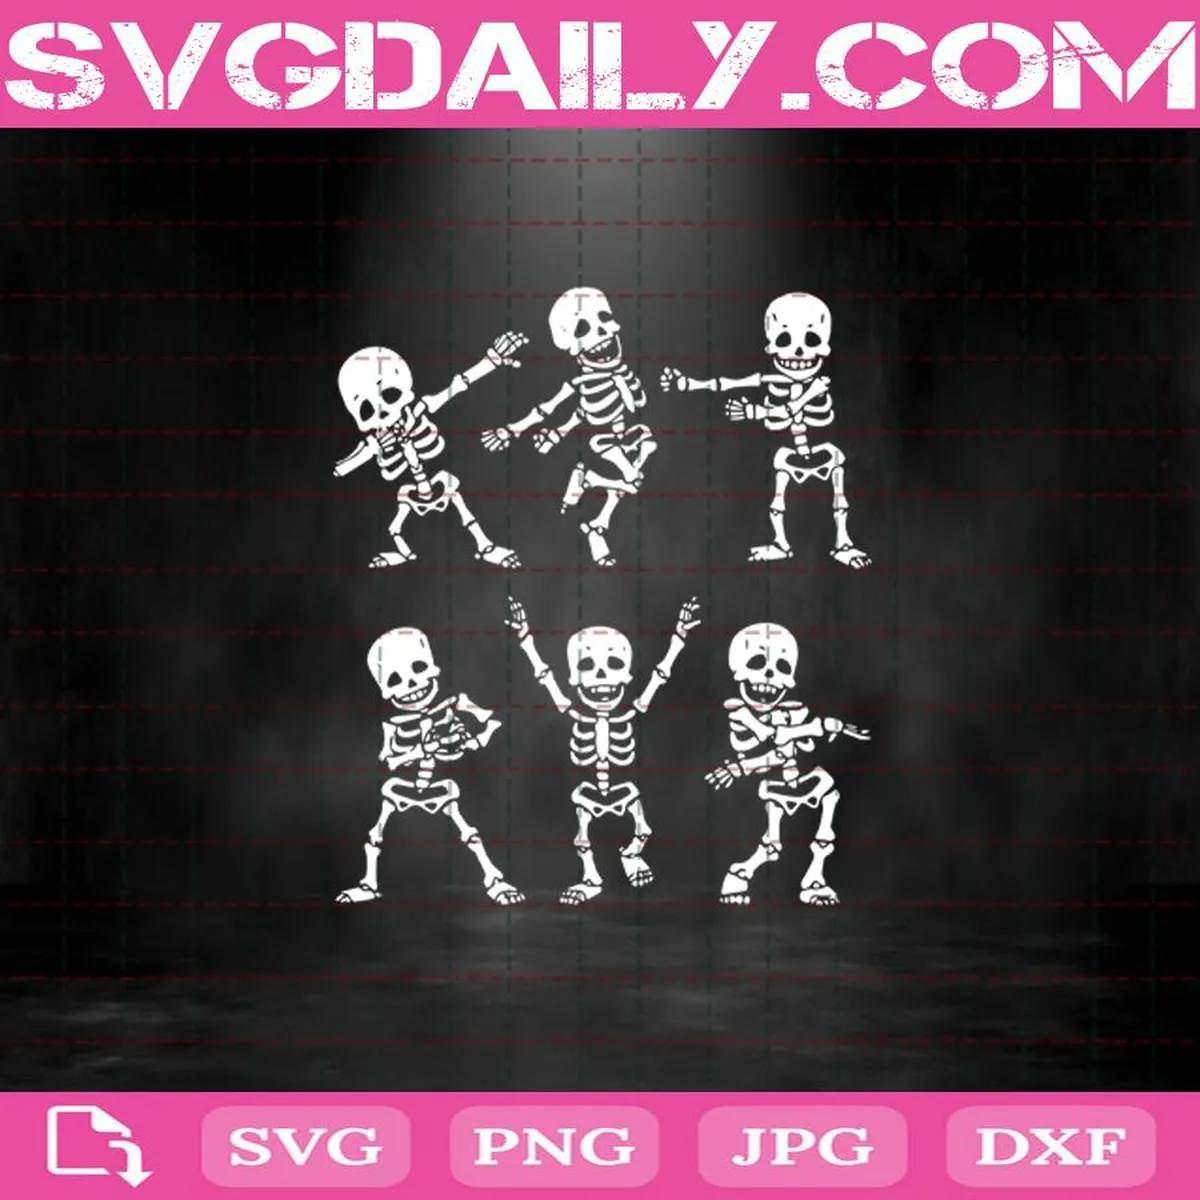 Dancing Skeletons Funny Halloween Svg, Skeletons Svg, Funny Skeletons Svg, Halloween Svg, Dancing Skeletons Svg